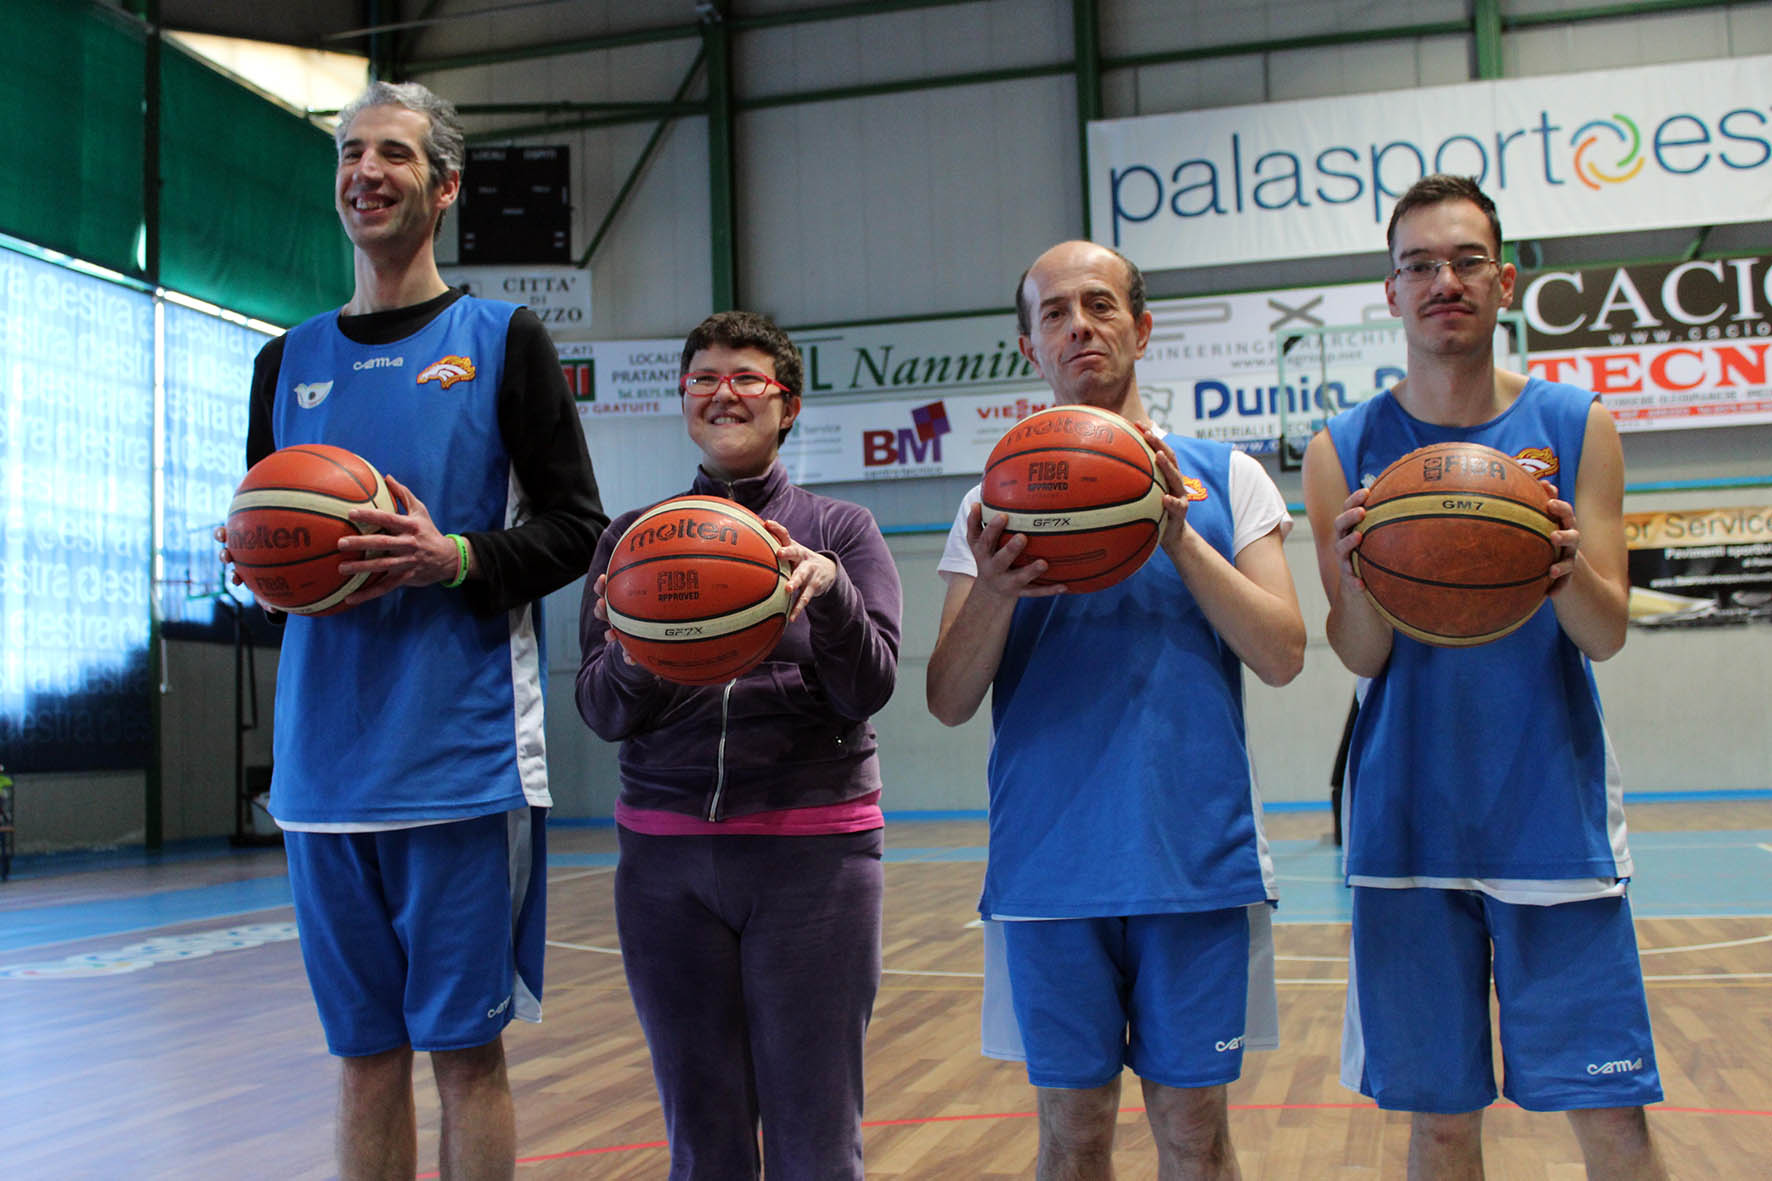 Alla Sba la disabilità incontra la pallacanestro